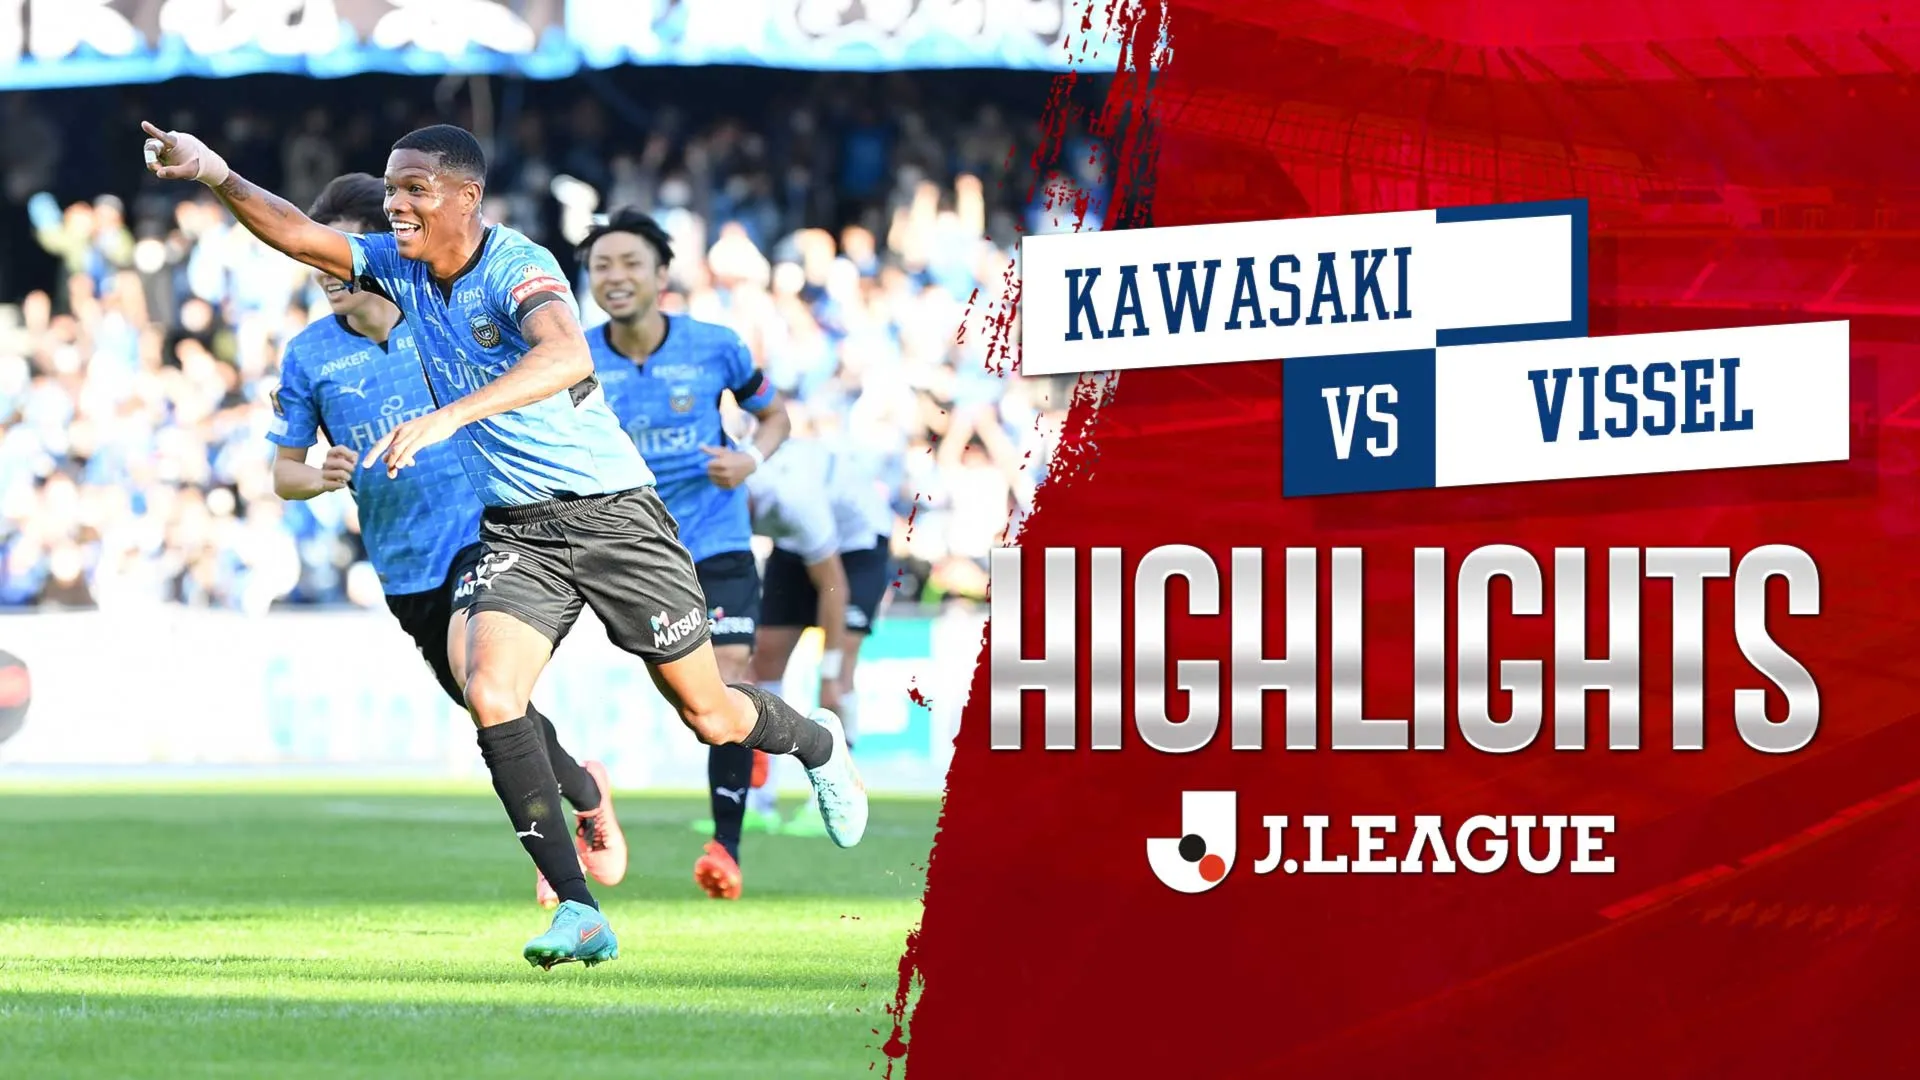 Highlights Kawasaki - Vissel (Vòng 33 - VĐQG Nhật Bản 2022)